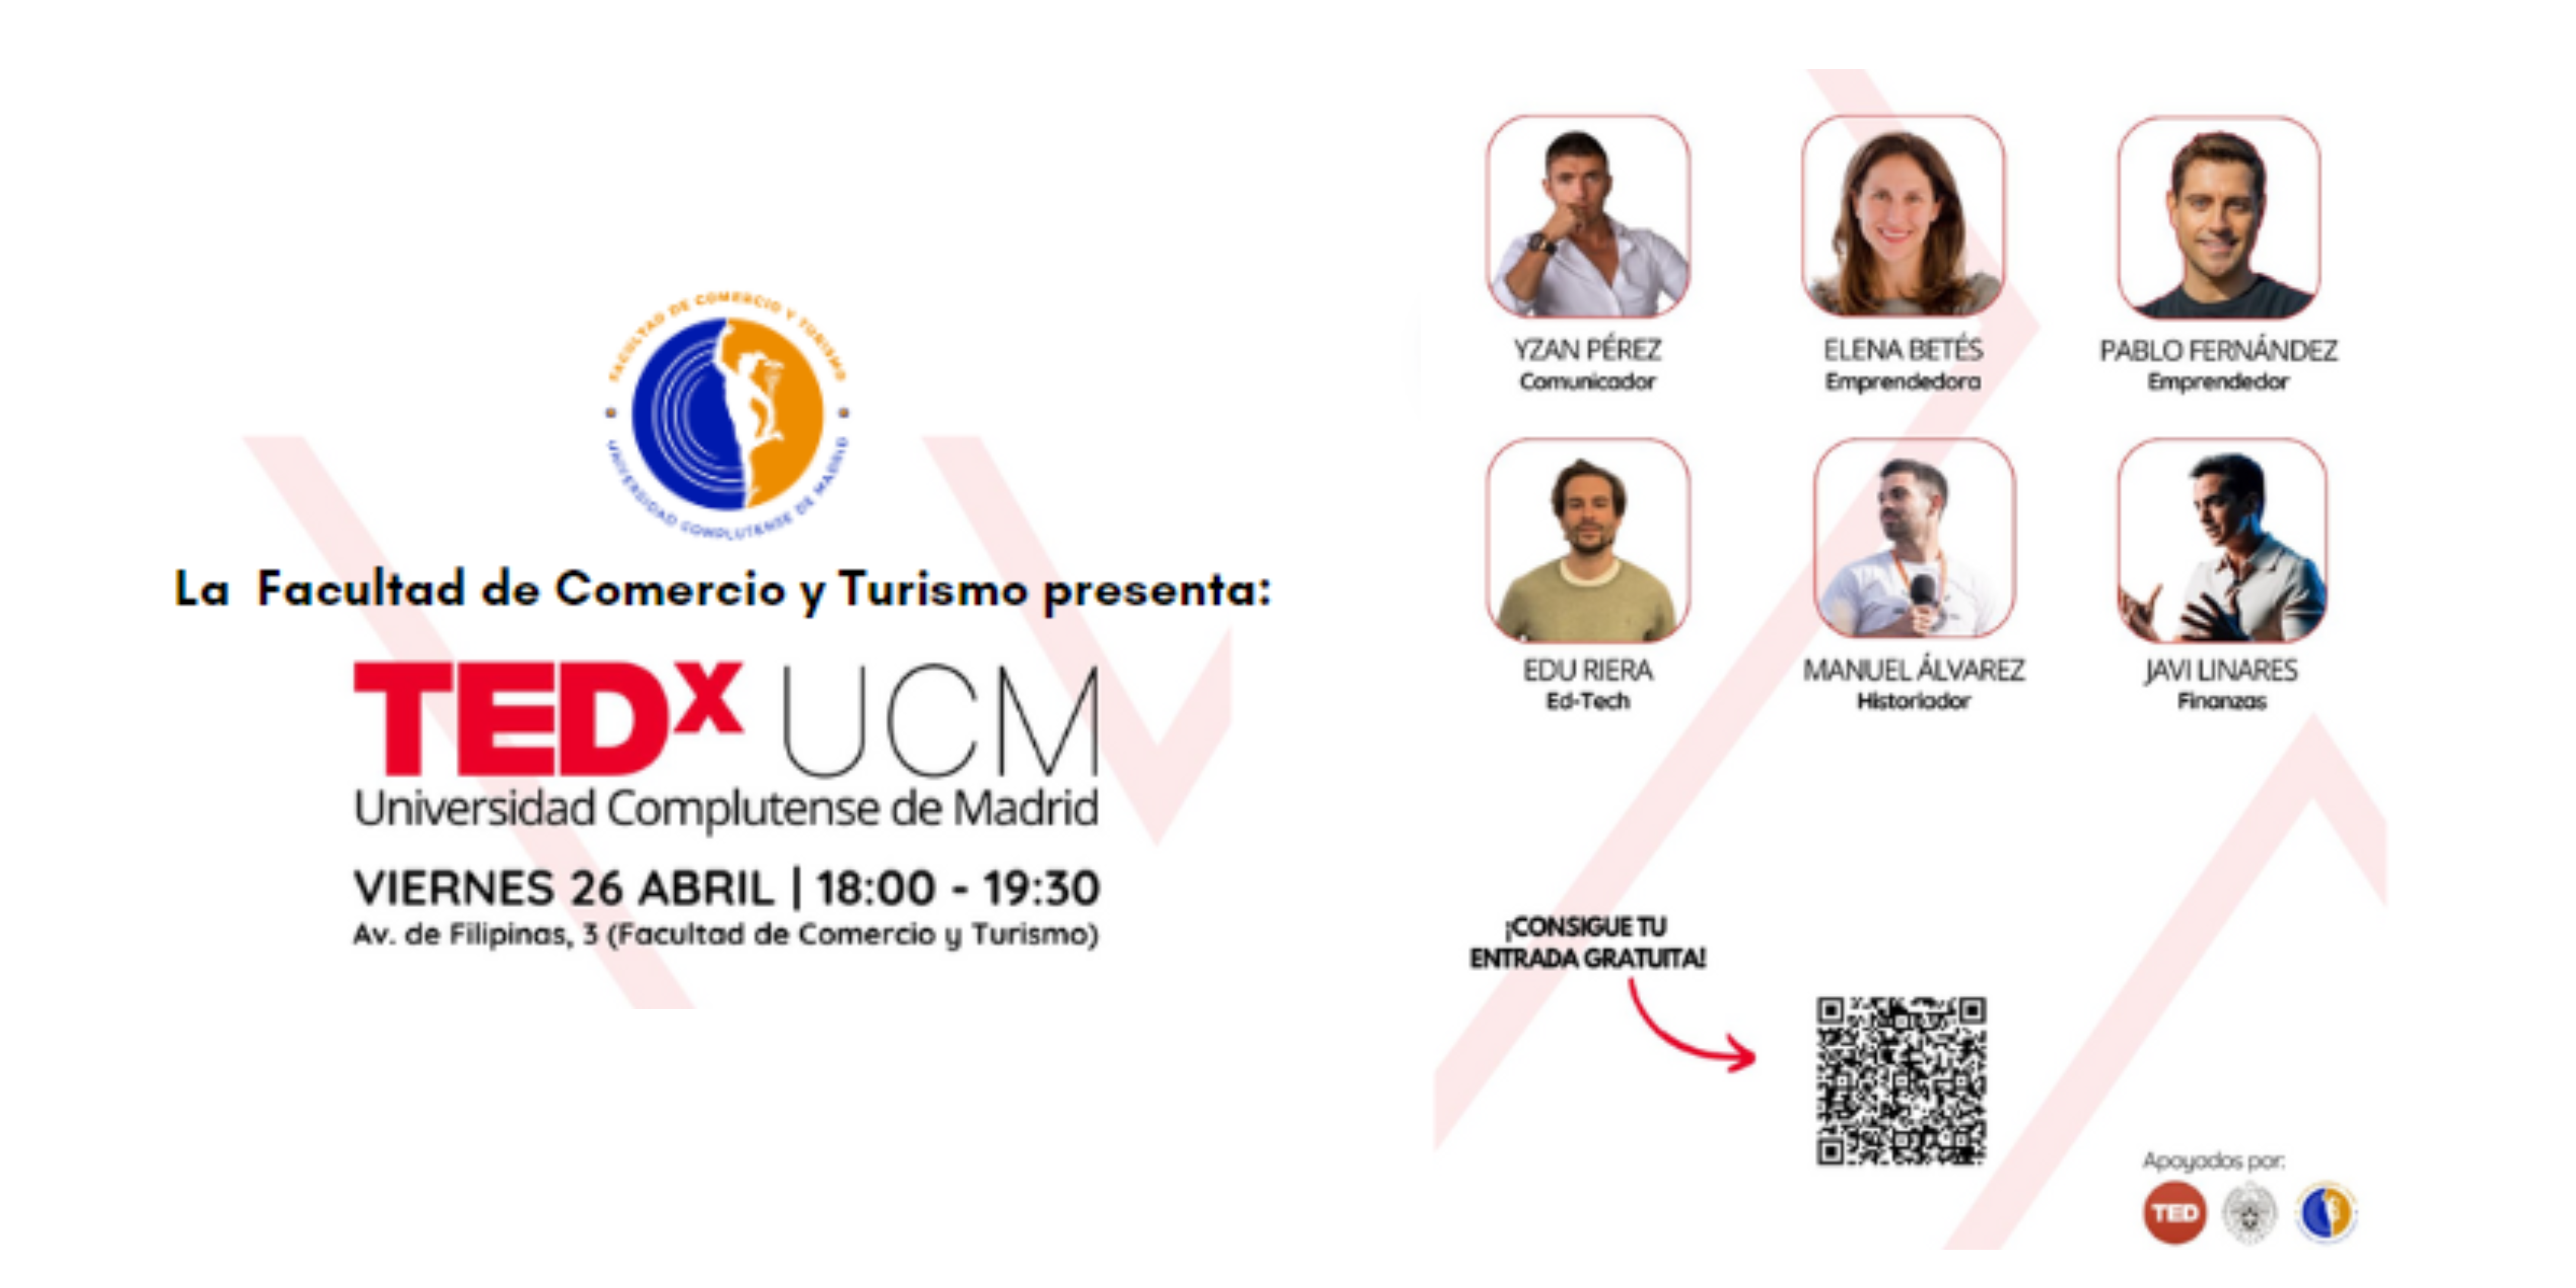 CHARLAS TEDx EN LA FACULTAD DE COMERCIO Y TURISMO. 26 DE ABRIL 18.00H. SALÓN DE ACTOS